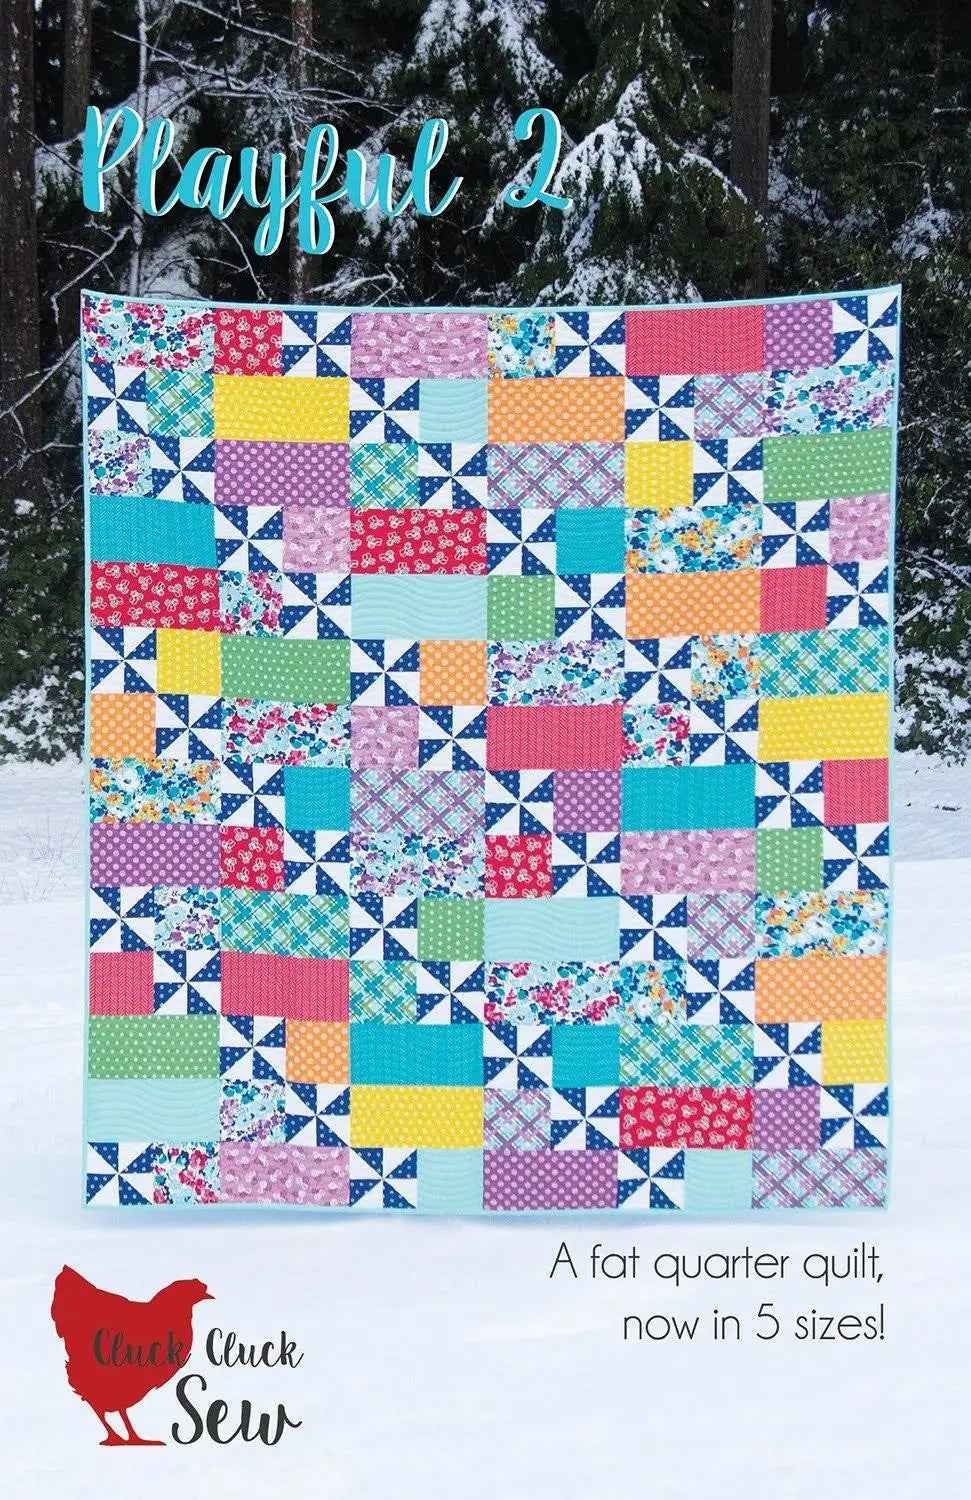 Playful 2 Quilt Pattern - Cluck Cluck Sew